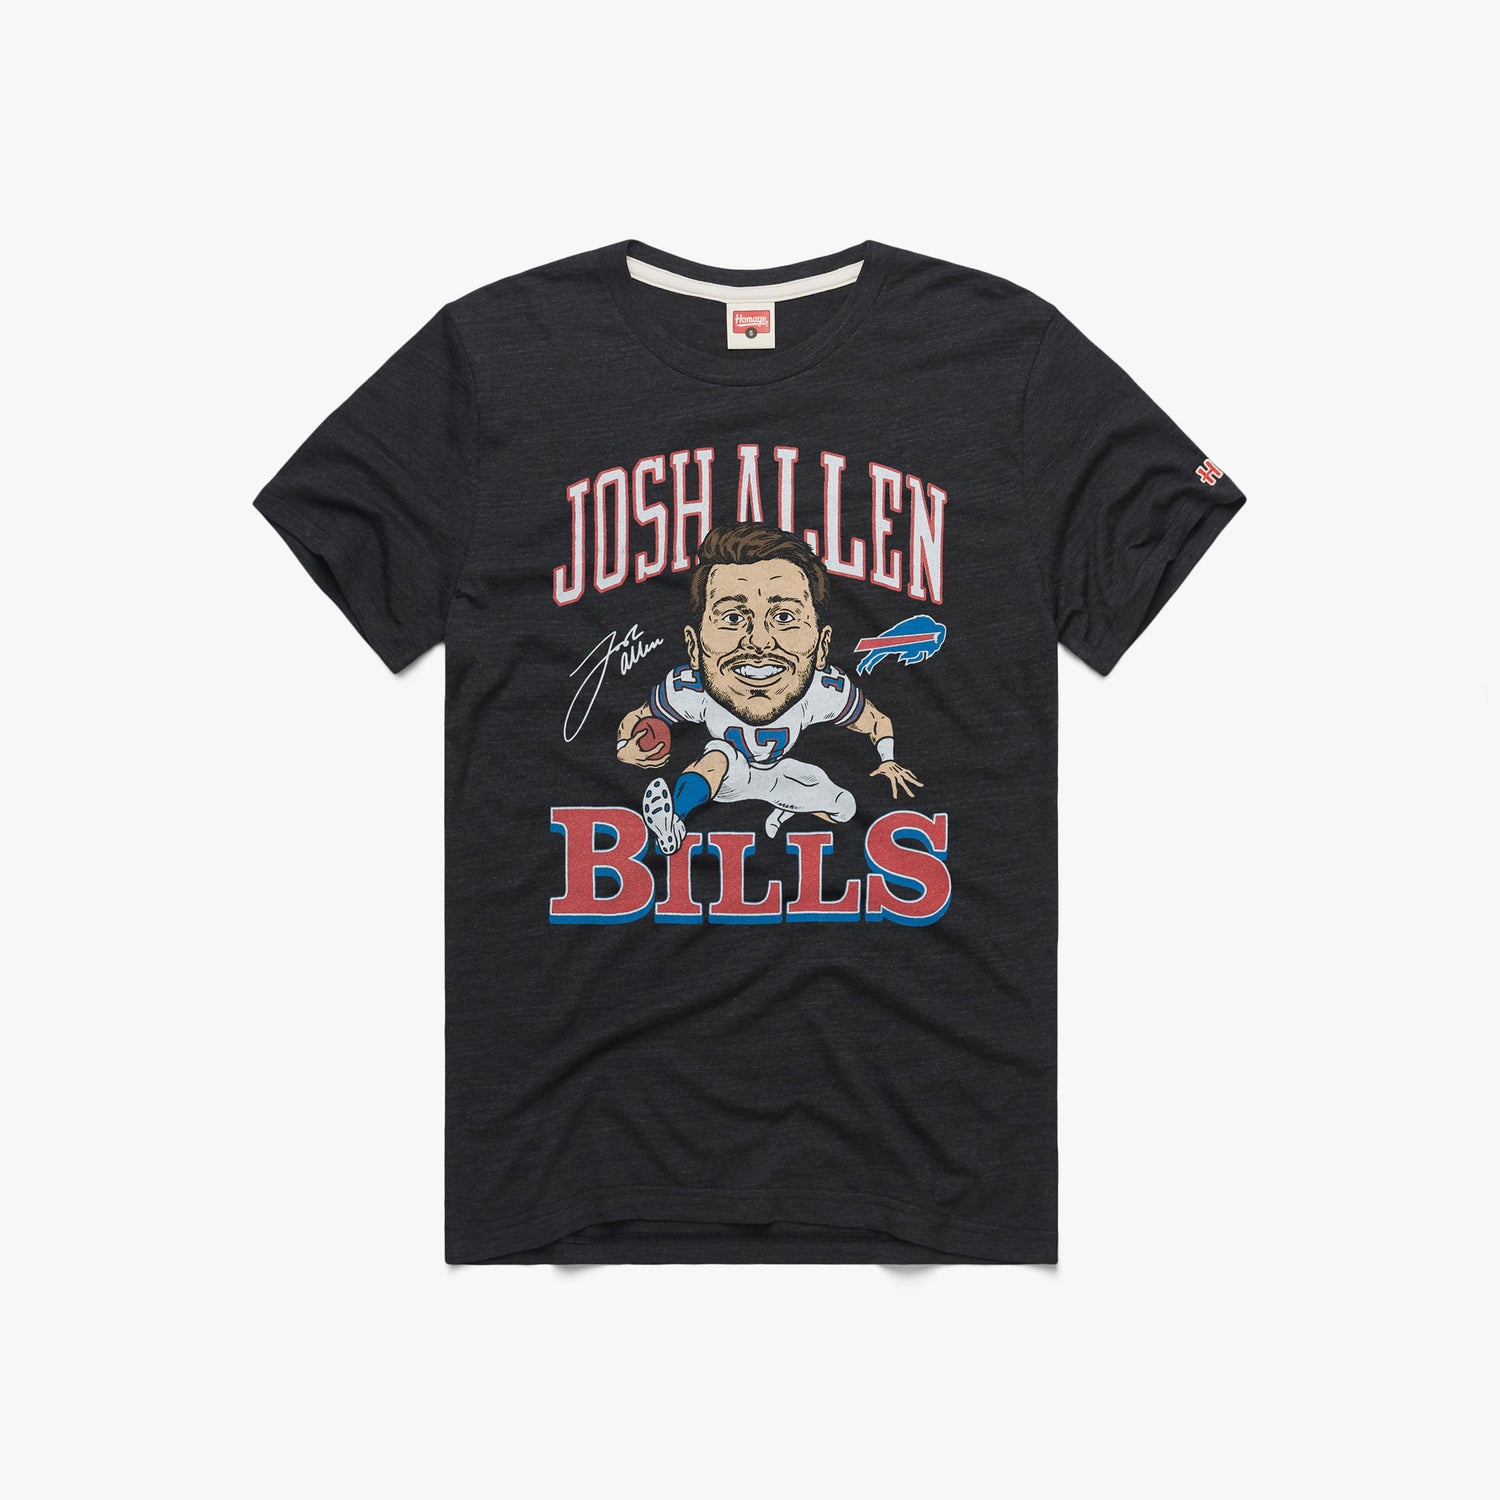 Best Freiend got me a new shirt! GO BILLS GO! : r/buffalobills